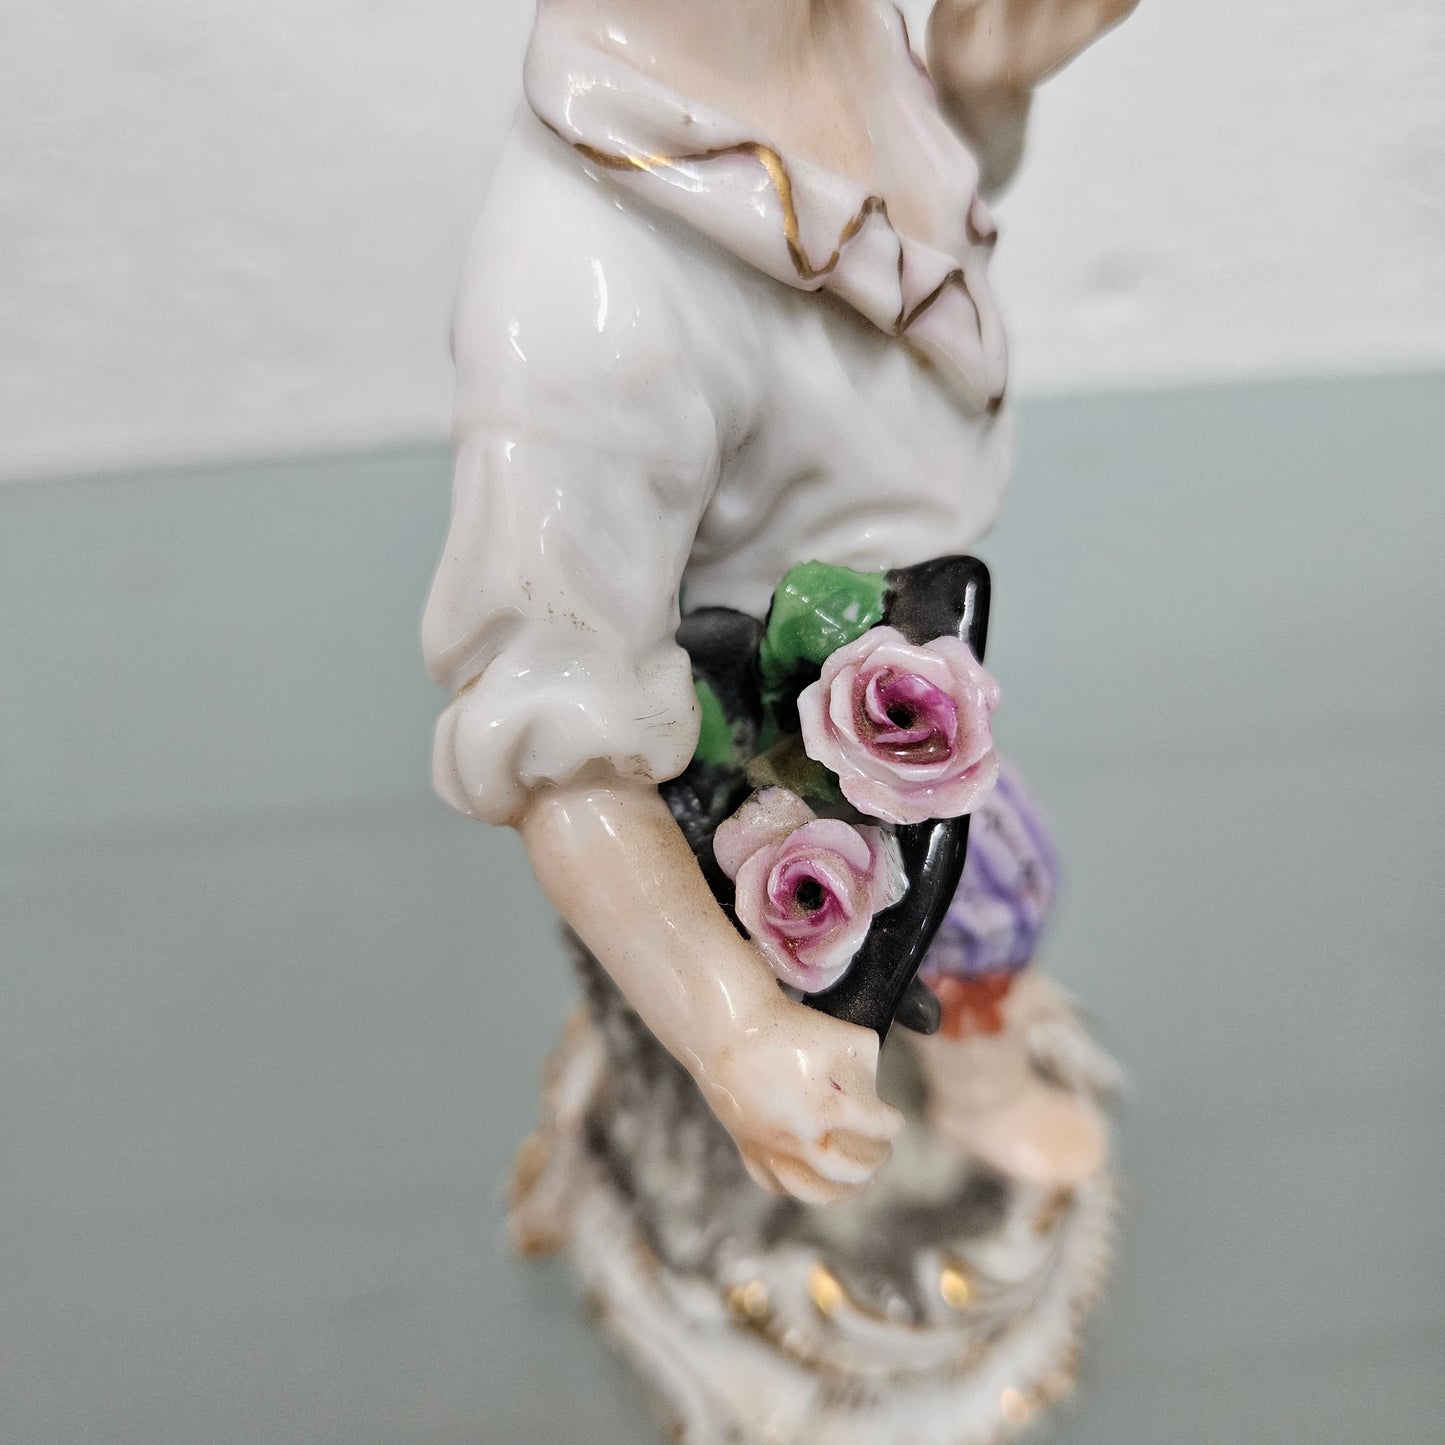 Frankenthal Hard Paste Boy Figurine